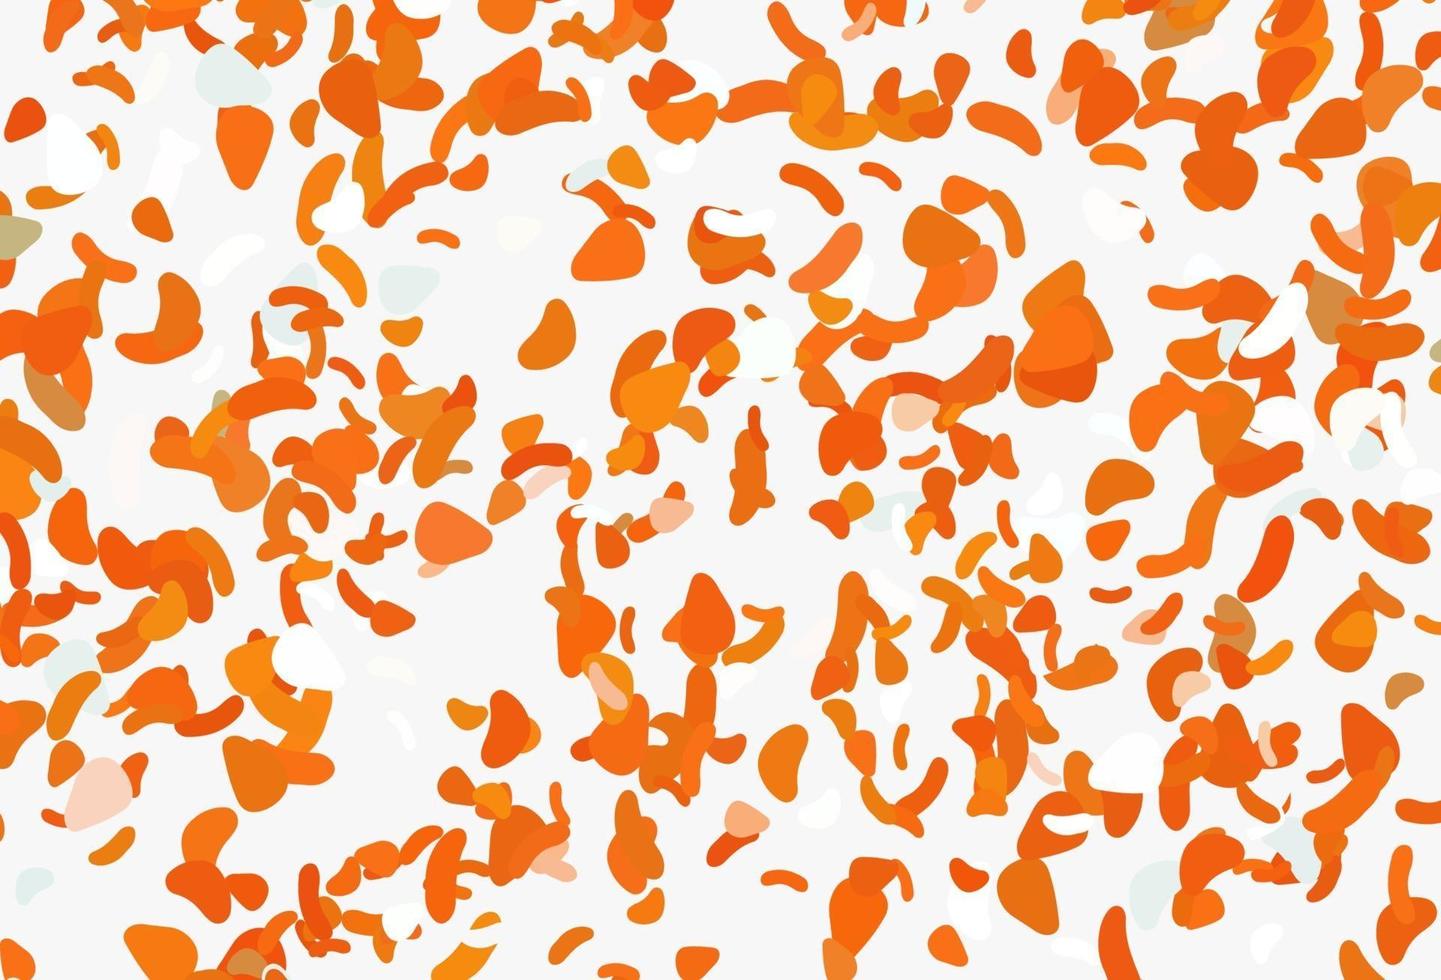 sfondo vettoriale arancione chiaro con forme astratte.